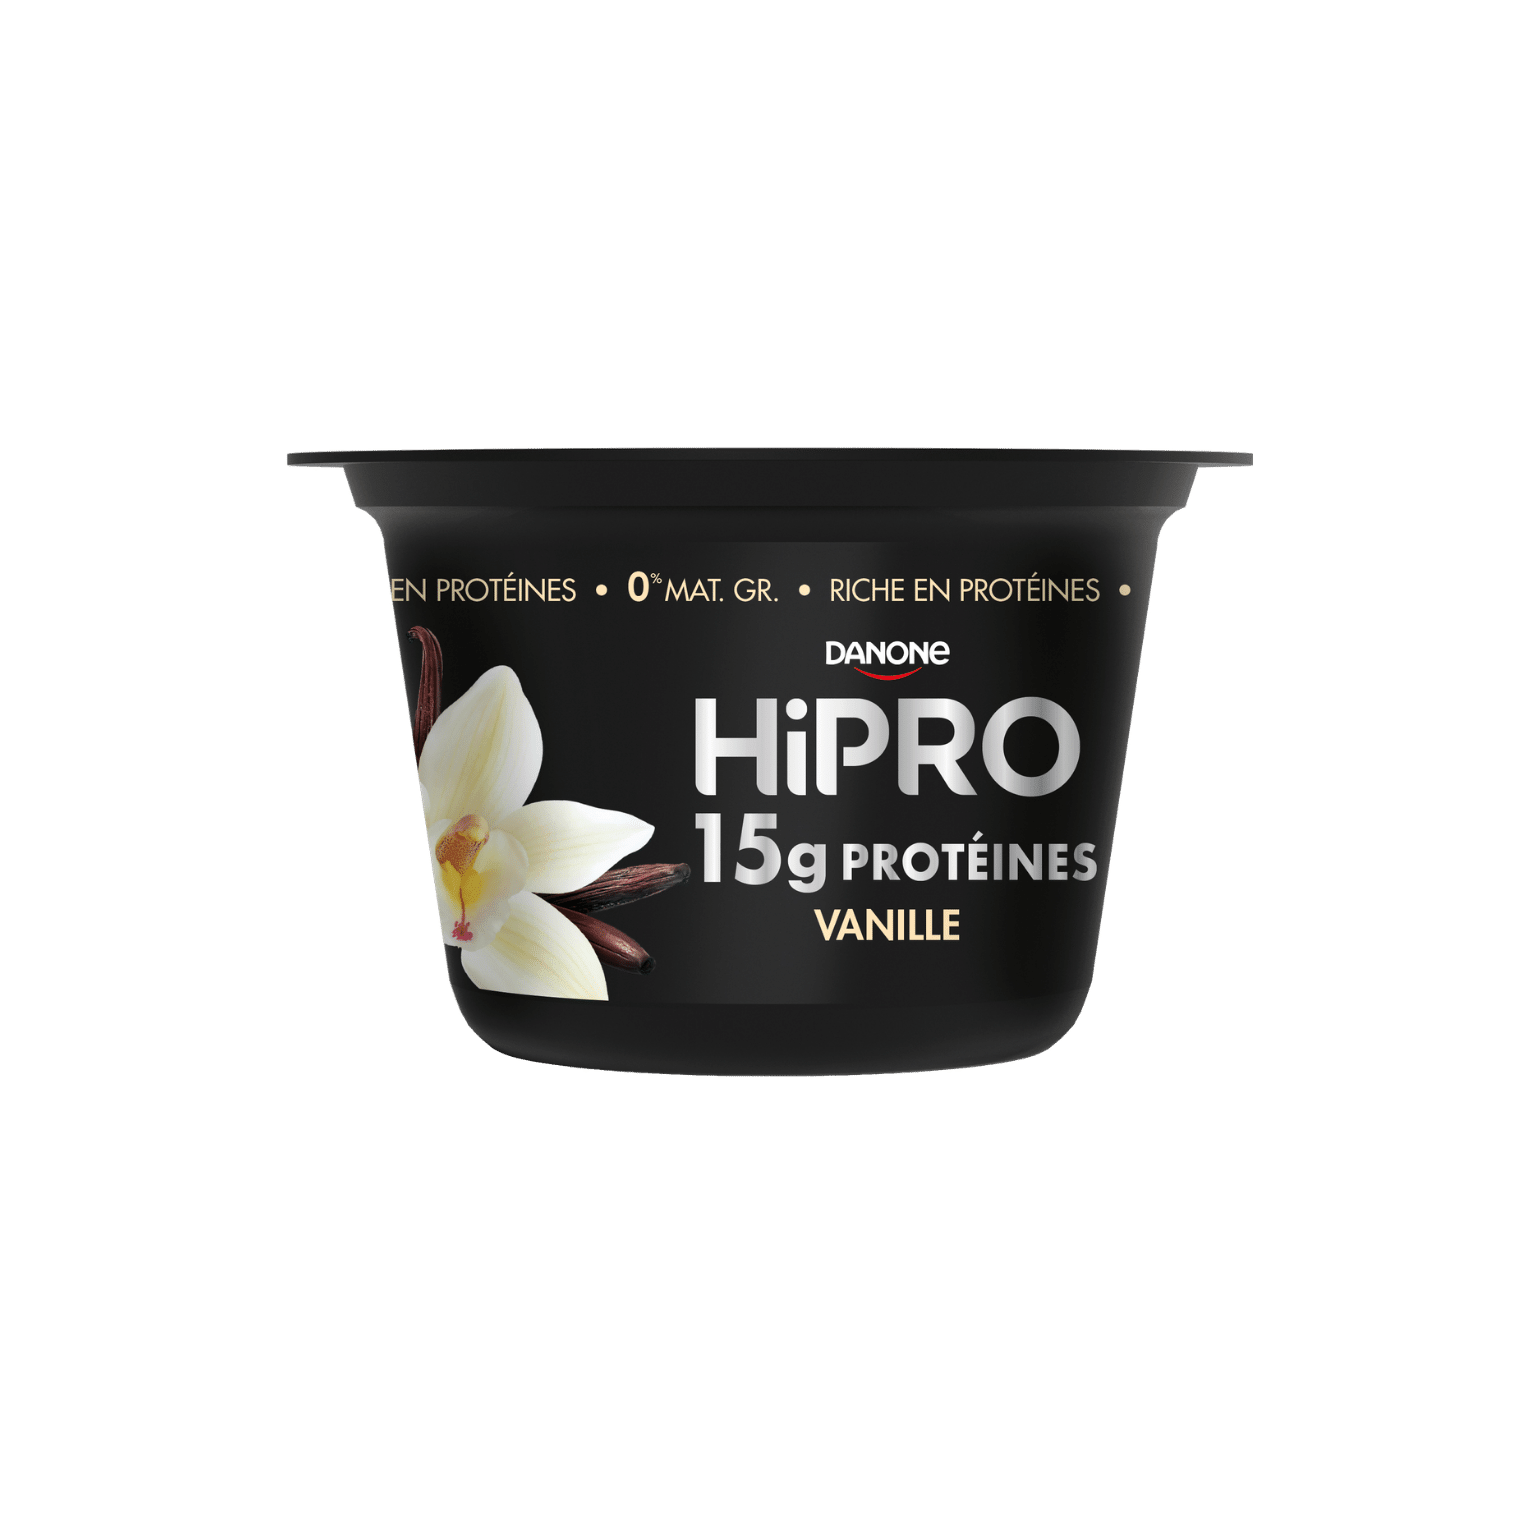 Découvrez notre onctueux HiPRO Vanille à déguster à la cuillère, avec 15g de protéines et sans matières grasses.